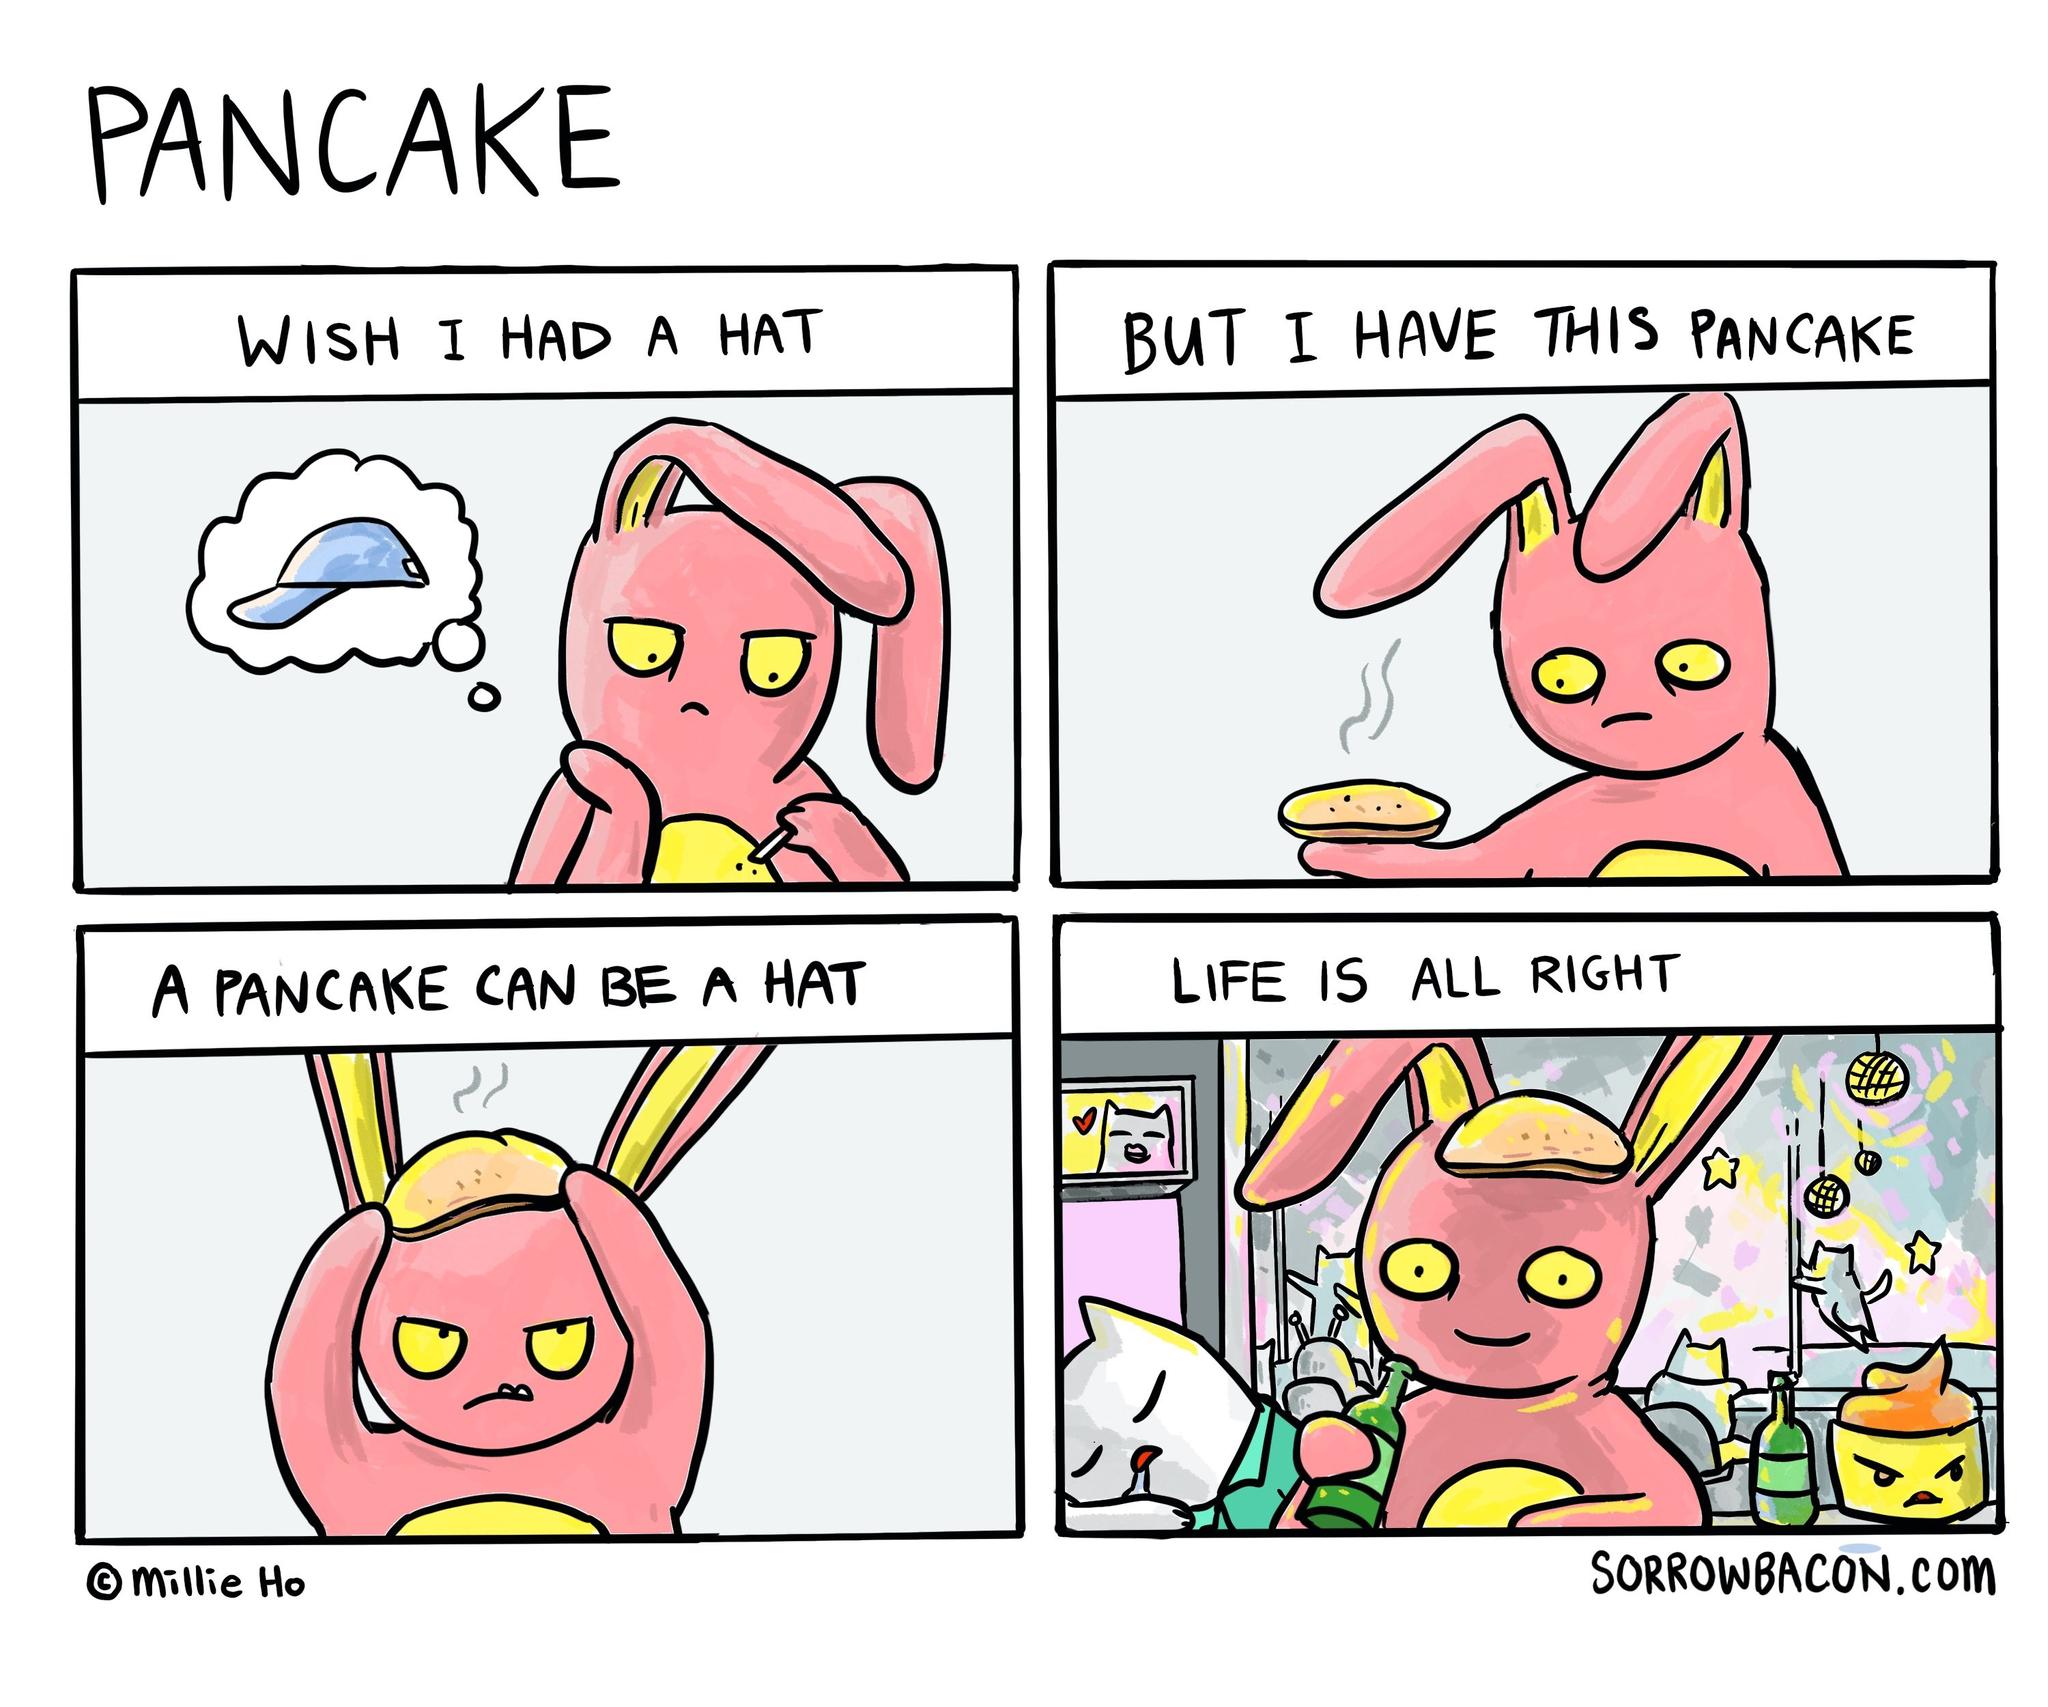 Pancake sorrowbacon comic